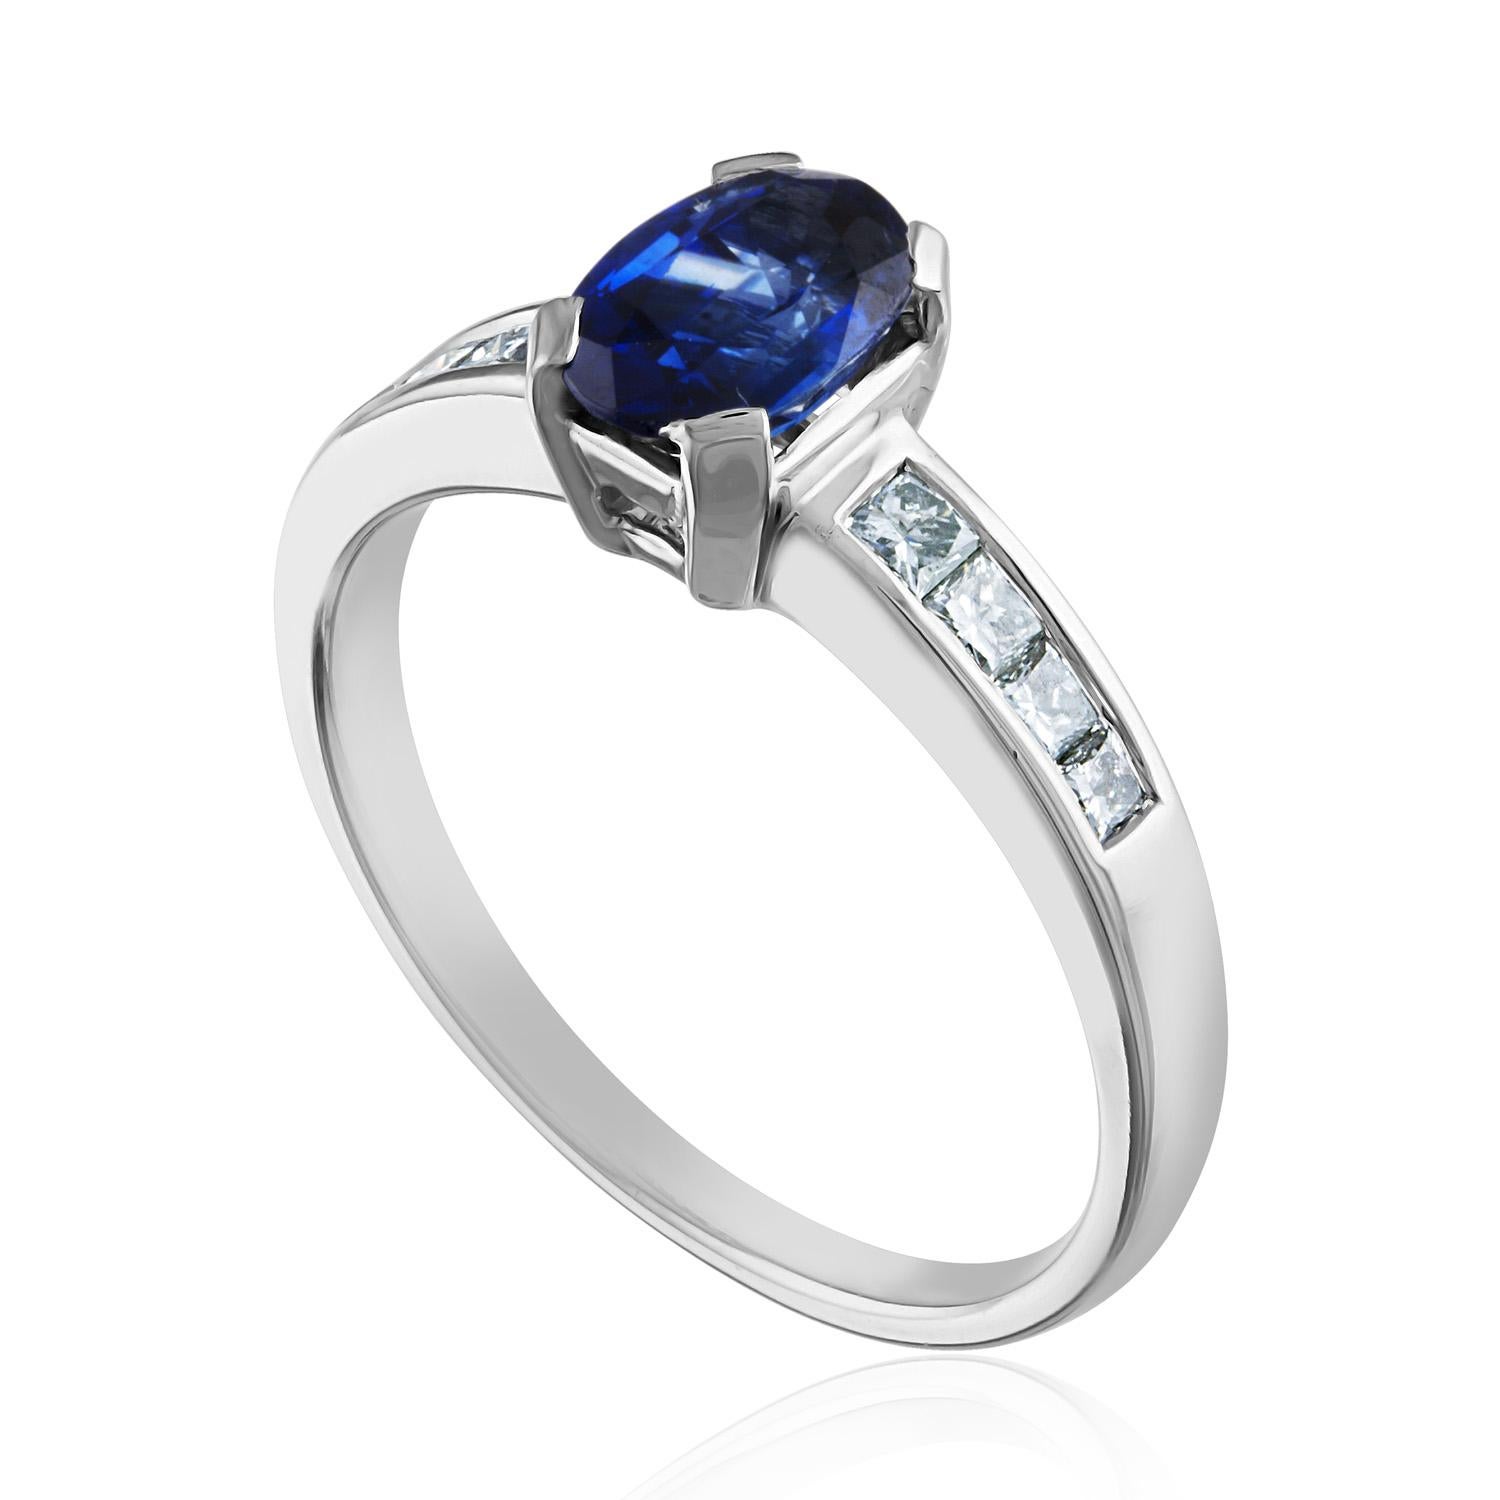 Schöner Ring mit blauem Saphir.
Der Ring ist aus 18K Weißgold.
Der blaue Saphir ist oval 0,98 Karat.
Der Stein ist AGL-zertifiziert,
Der Stein ist erhitzt.
Es sind 0,31 Karat Diamanten F/G VS/SI.
Der Ring ist eine Größe 6,50, sizable.
Der Ring wiegt